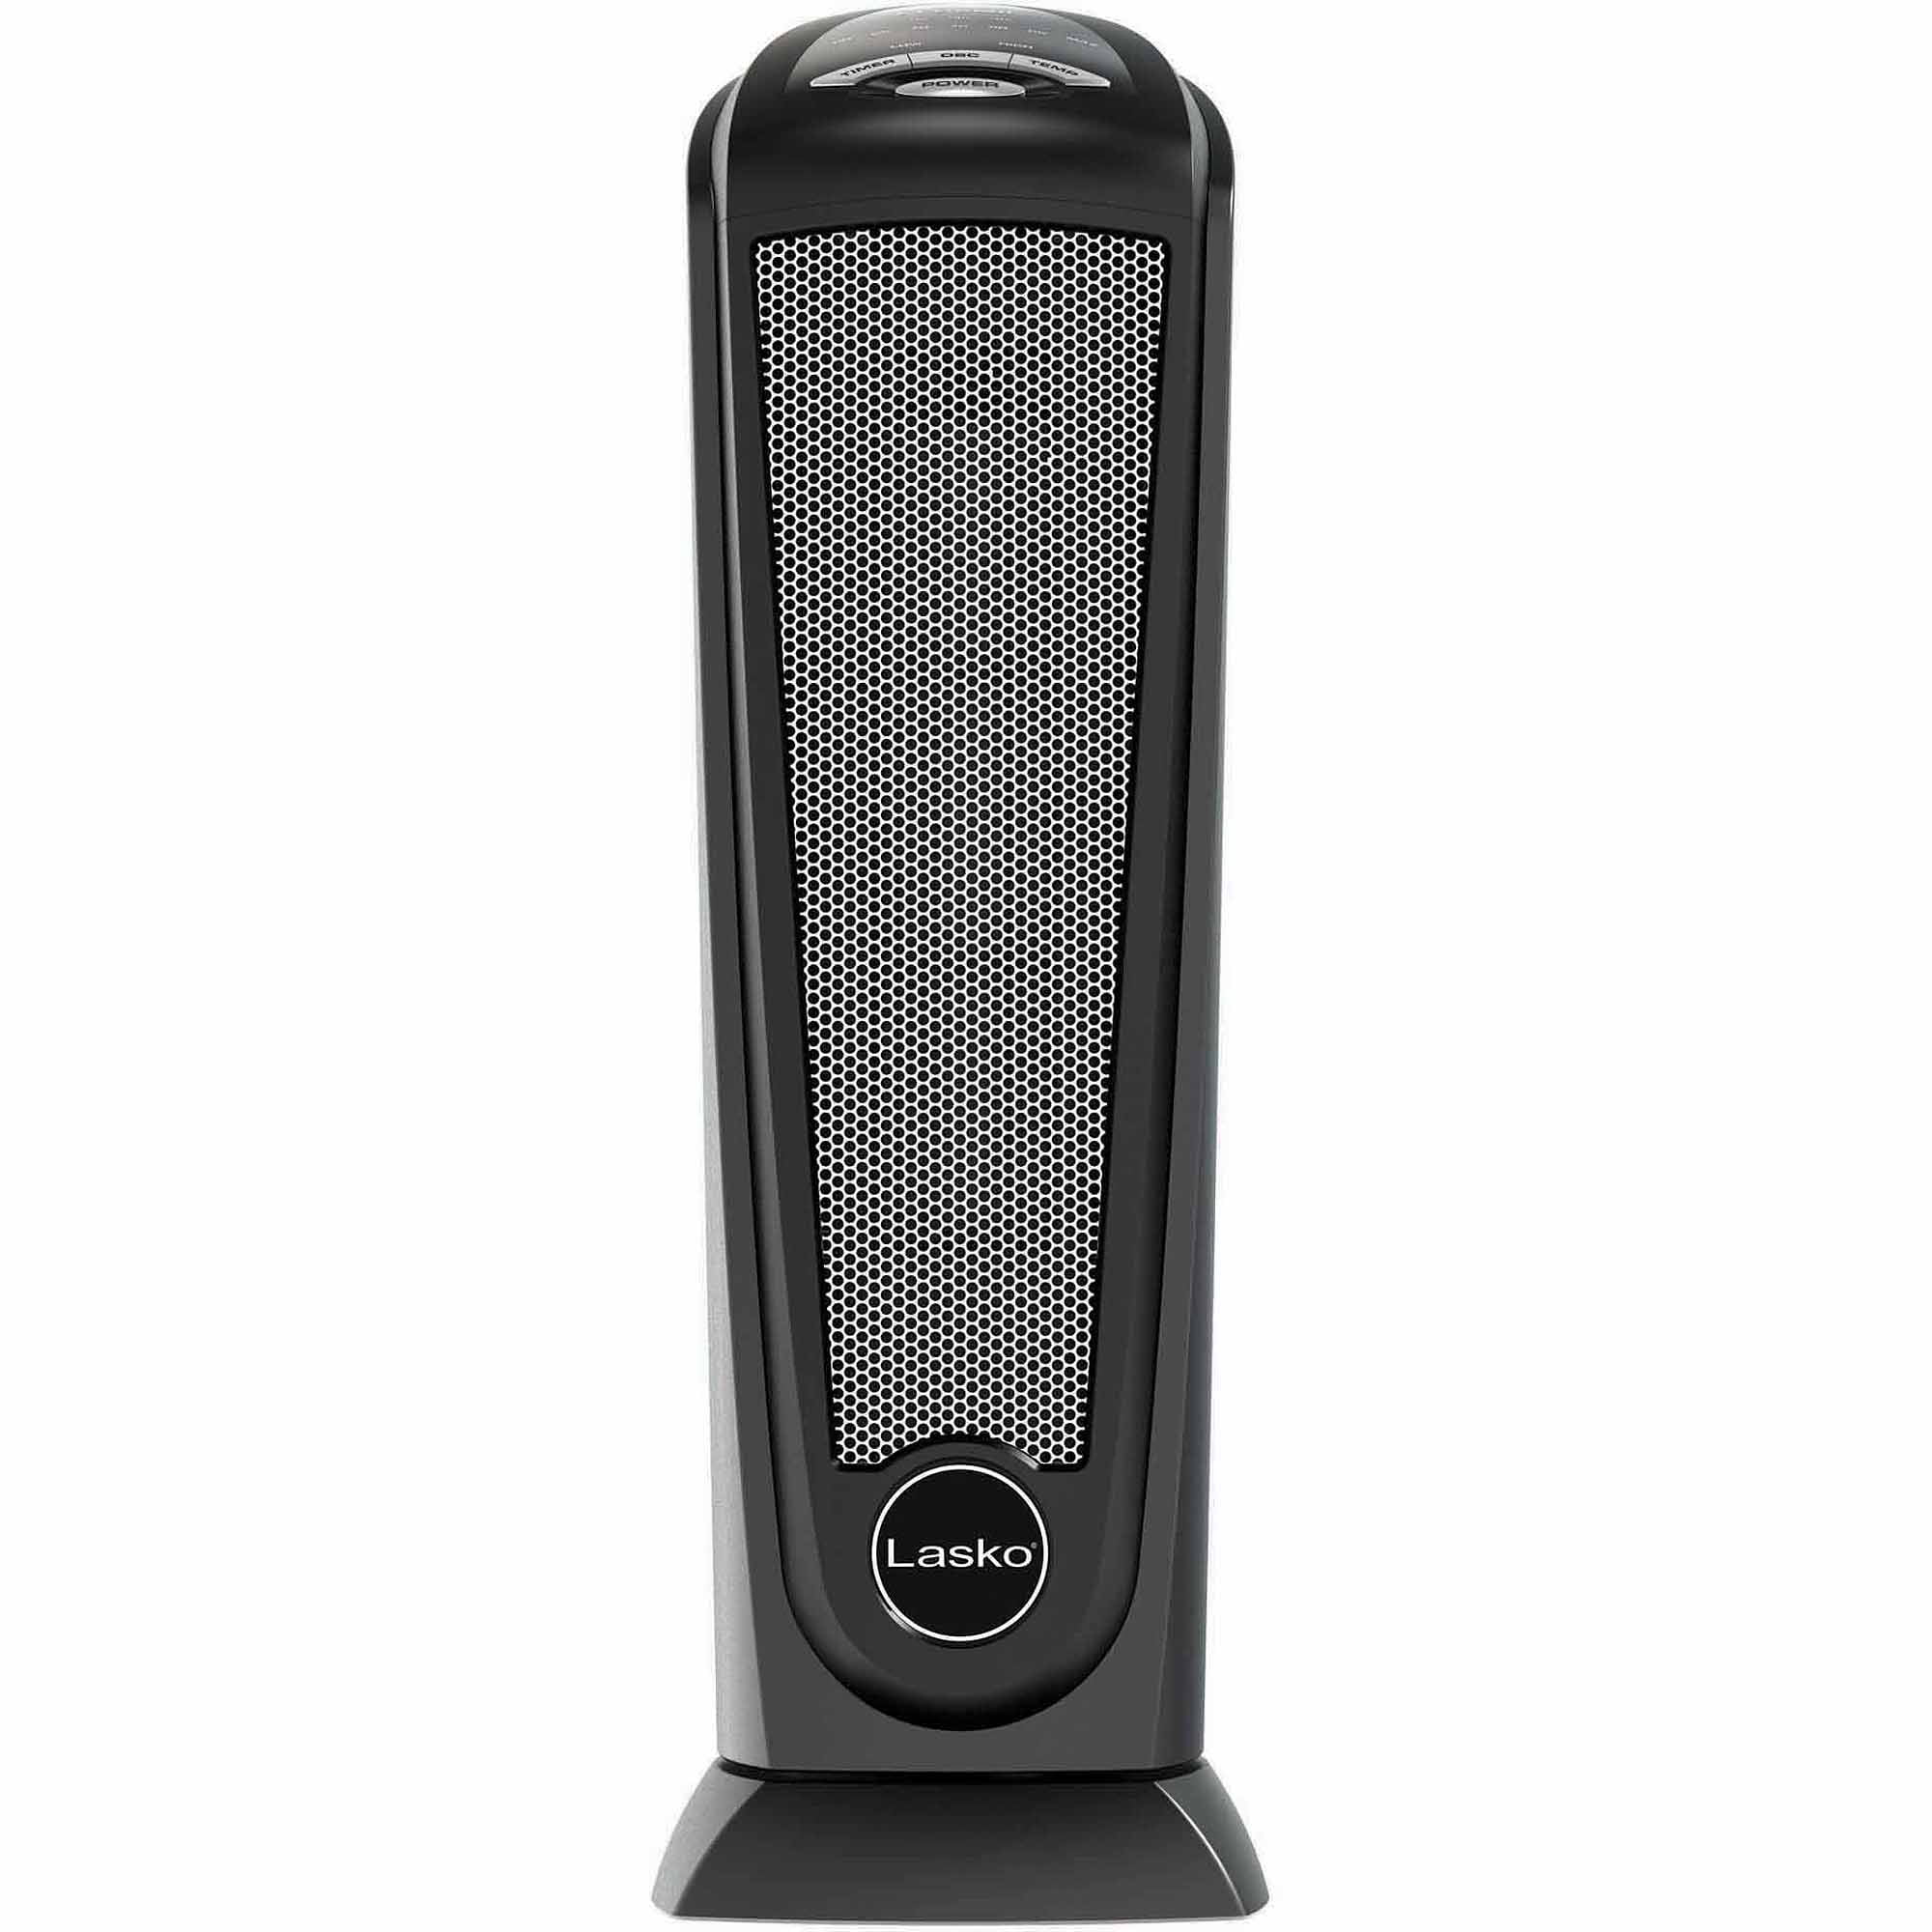 Black + Decker™ 1,500-Watt-Max Personal Desktop Heater with Fan Setting-  Black, 1 ct - Foods Co.